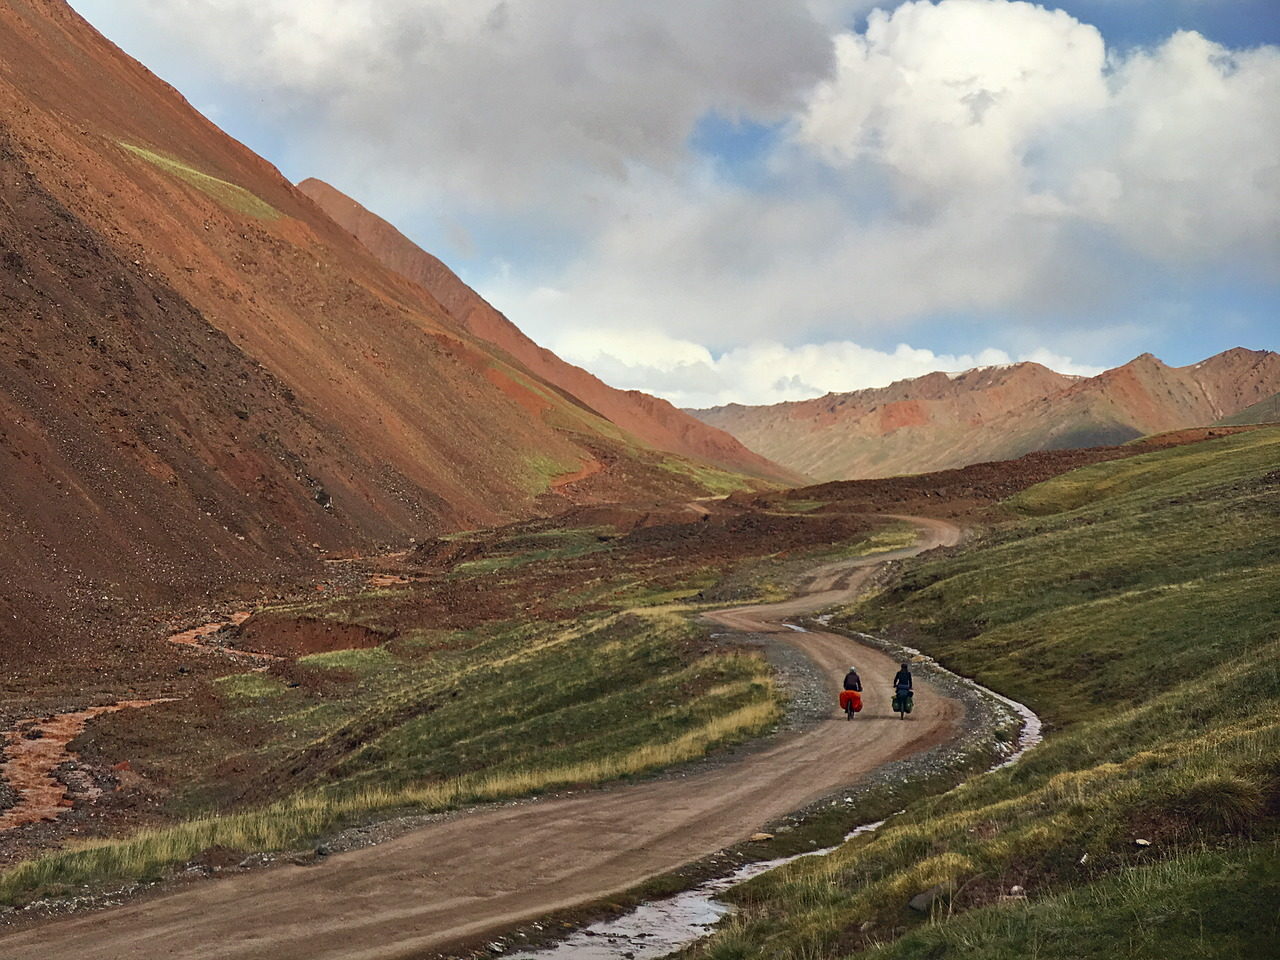 No Man's Land between Kyrgyzstan and Tajikistan